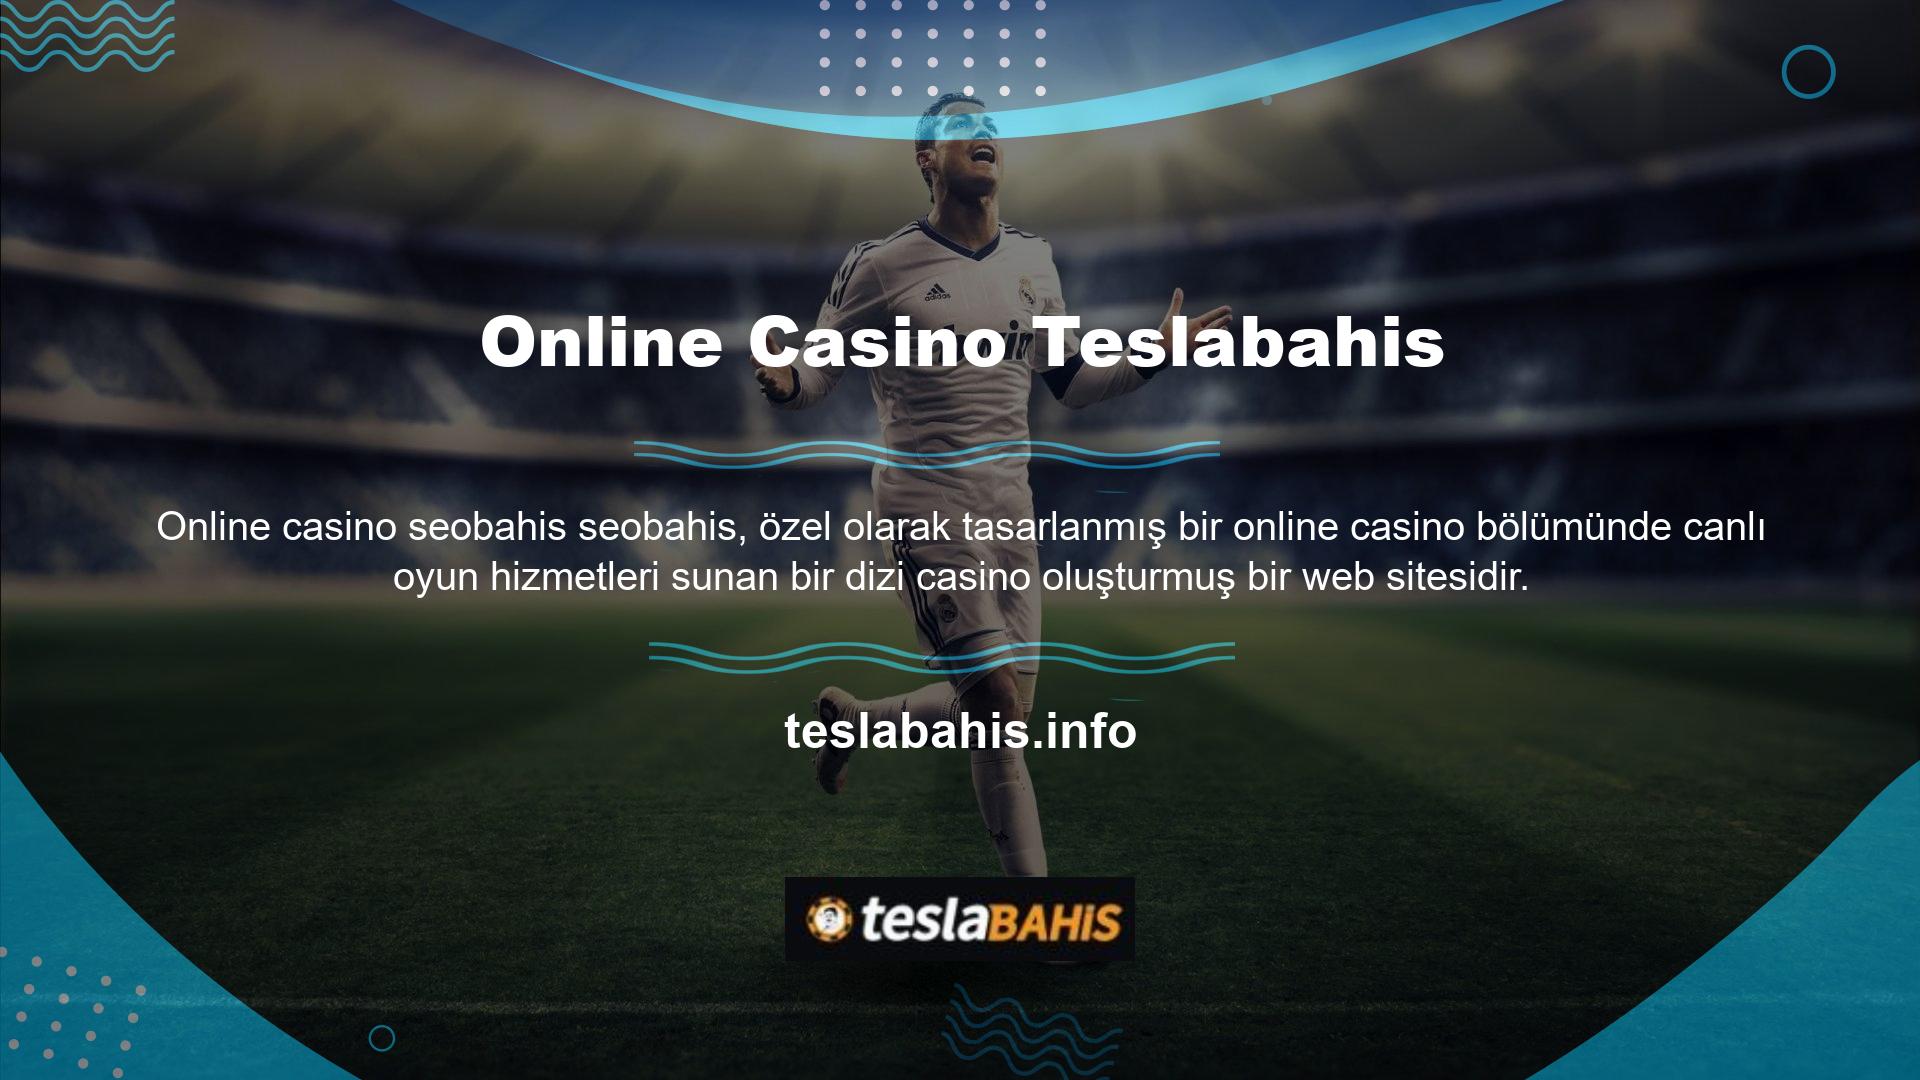 Online casino programlarında bulunan tüm oyunlara katılın ve gerçek kullanıcılarla canlı olarak rekabet edin